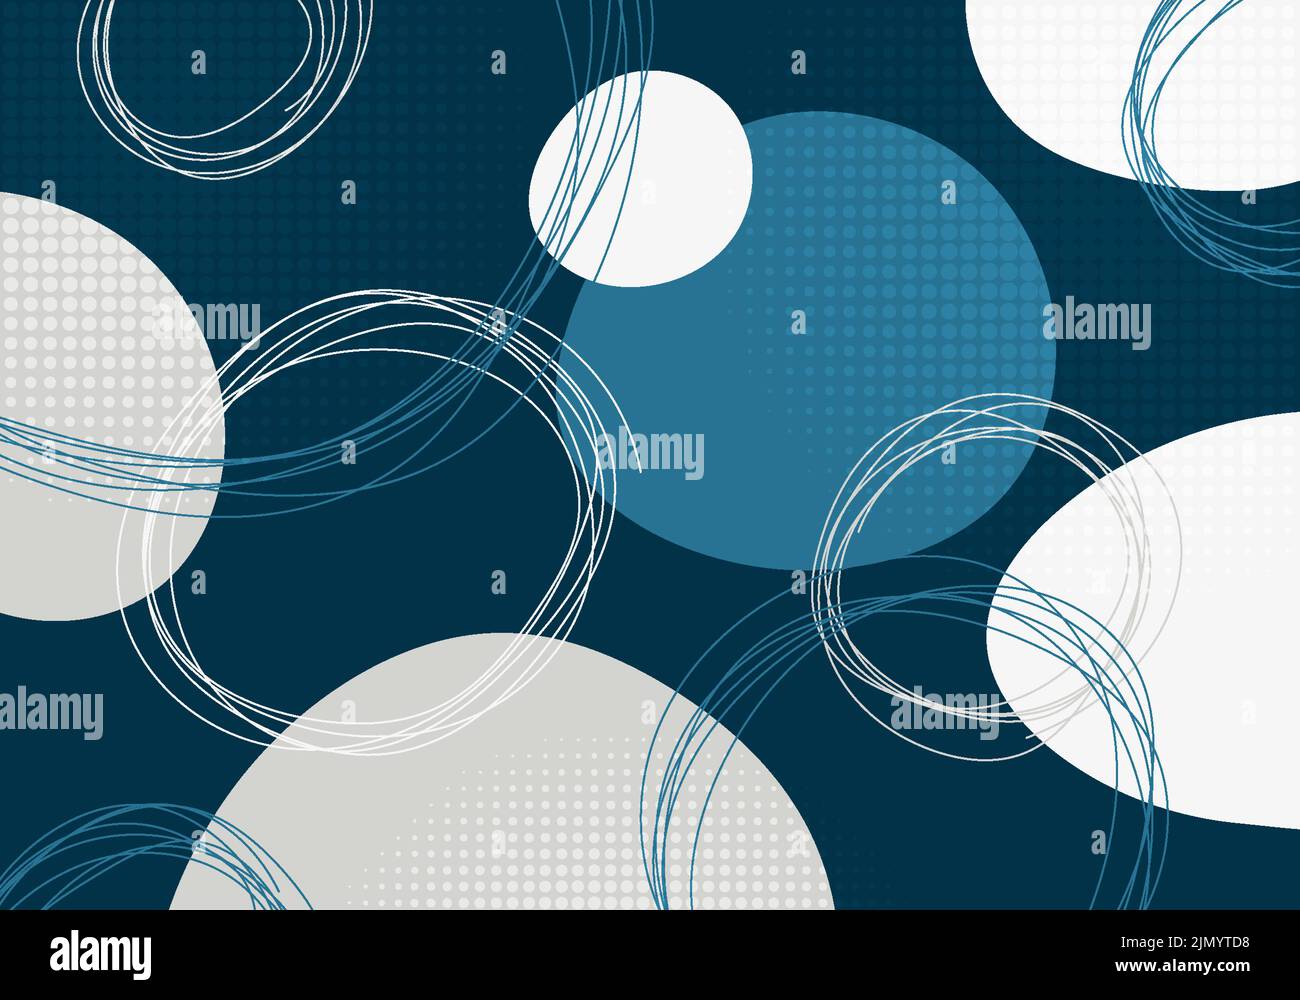 Abstrakter blauer und weißer Harmonielektus im Stil eines Kreises mit Punkthalftonmuster. Überlappendes Bildmaterial mit Hintergrund für Handzeichnungen. Vektor Stock Vektor